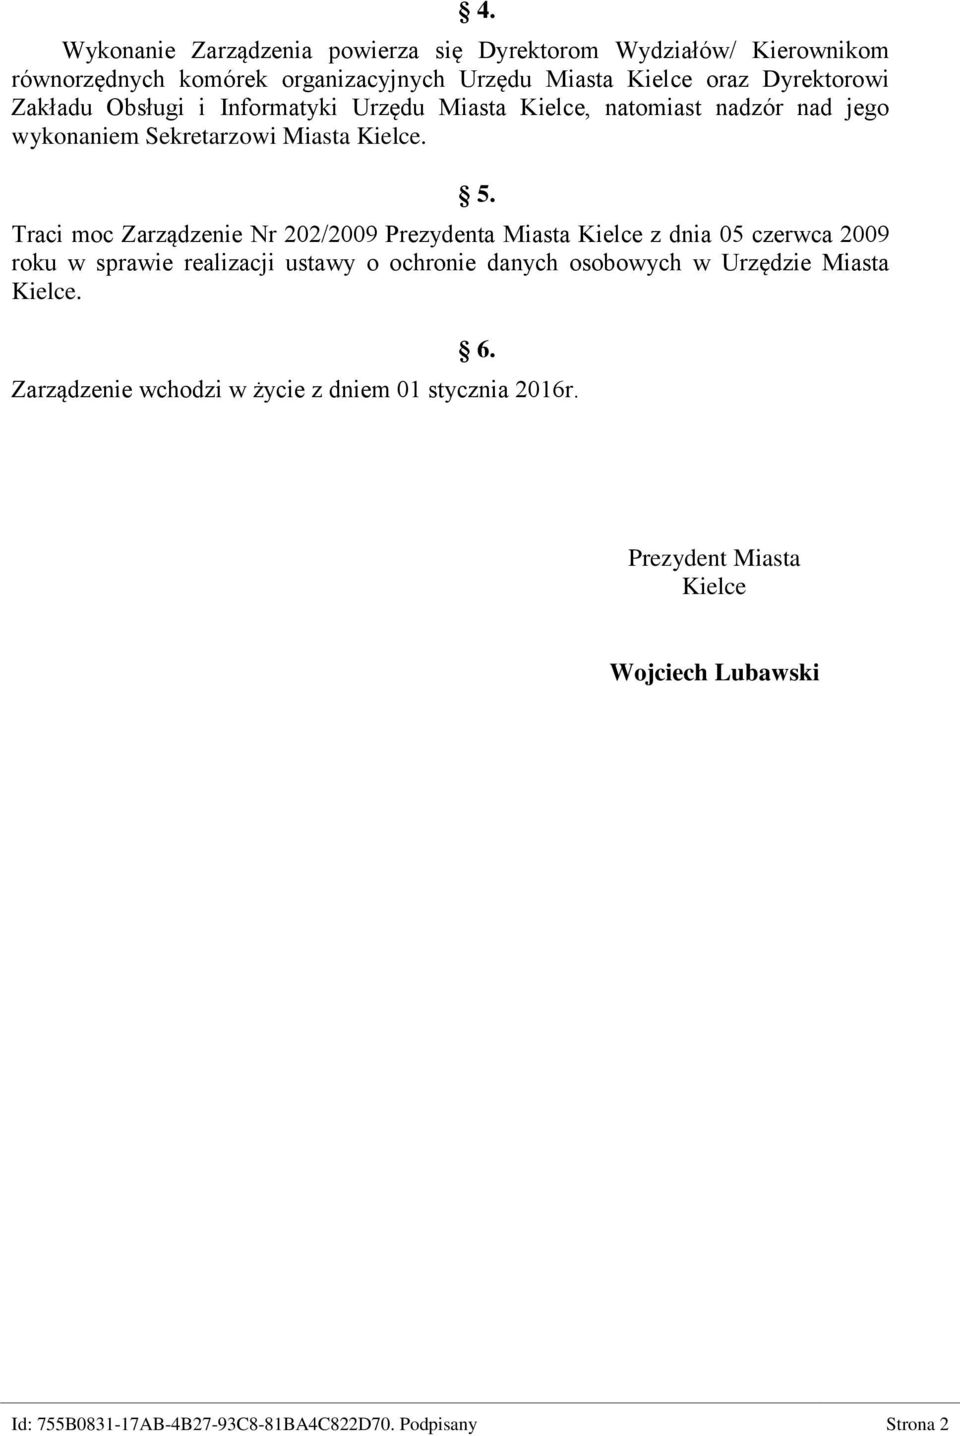 Traci moc Zarządzenie Nr 202/2009 Prezydenta Miasta Kielce z dnia 05 czerwca 2009 roku w sprawie realizacji ustawy o ochronie danych osobowych w